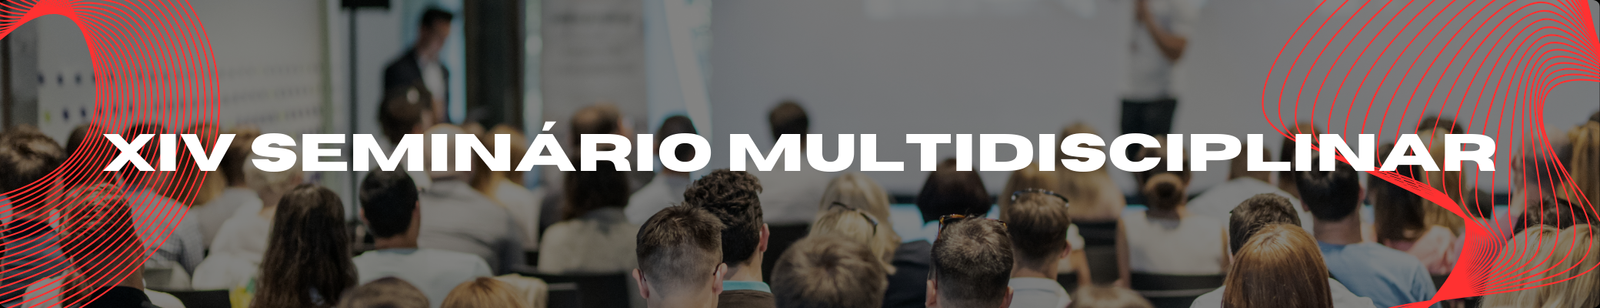 Icg titulos 3 -xiv seminário multidisciplinar - 2018